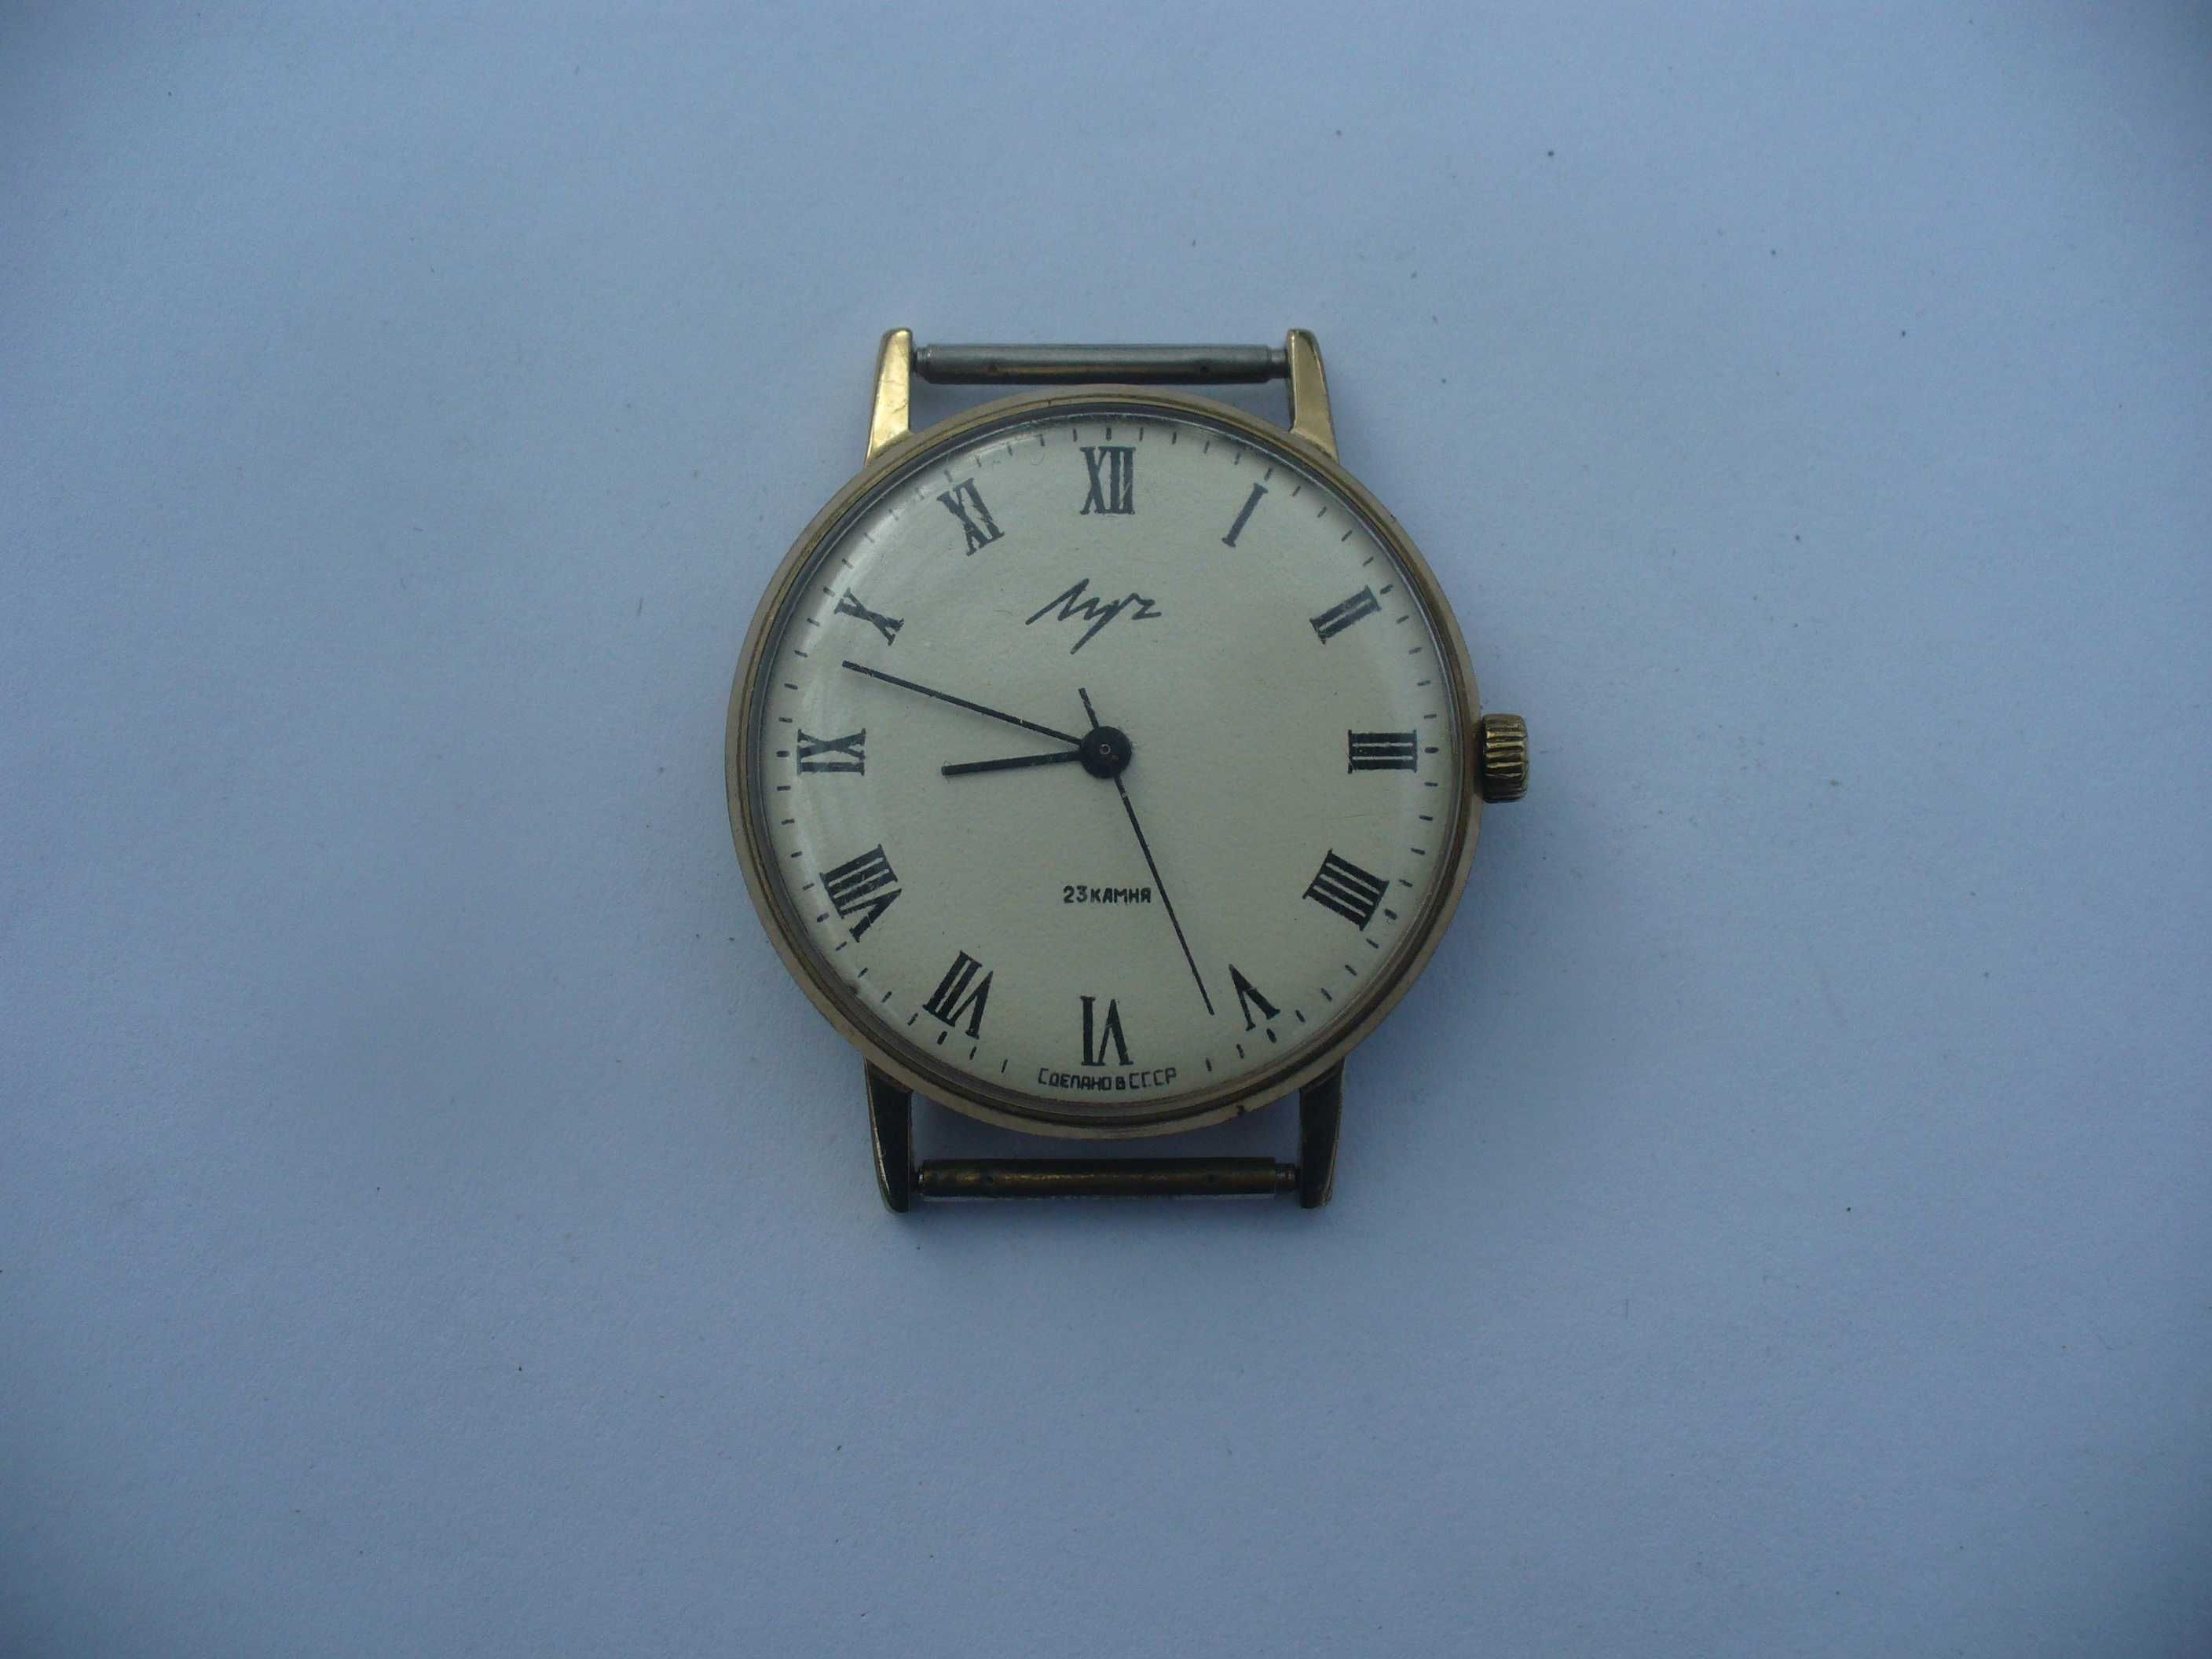 Sprzedam Radziecki zegarek nechaniczny 23 kamienie Łucz